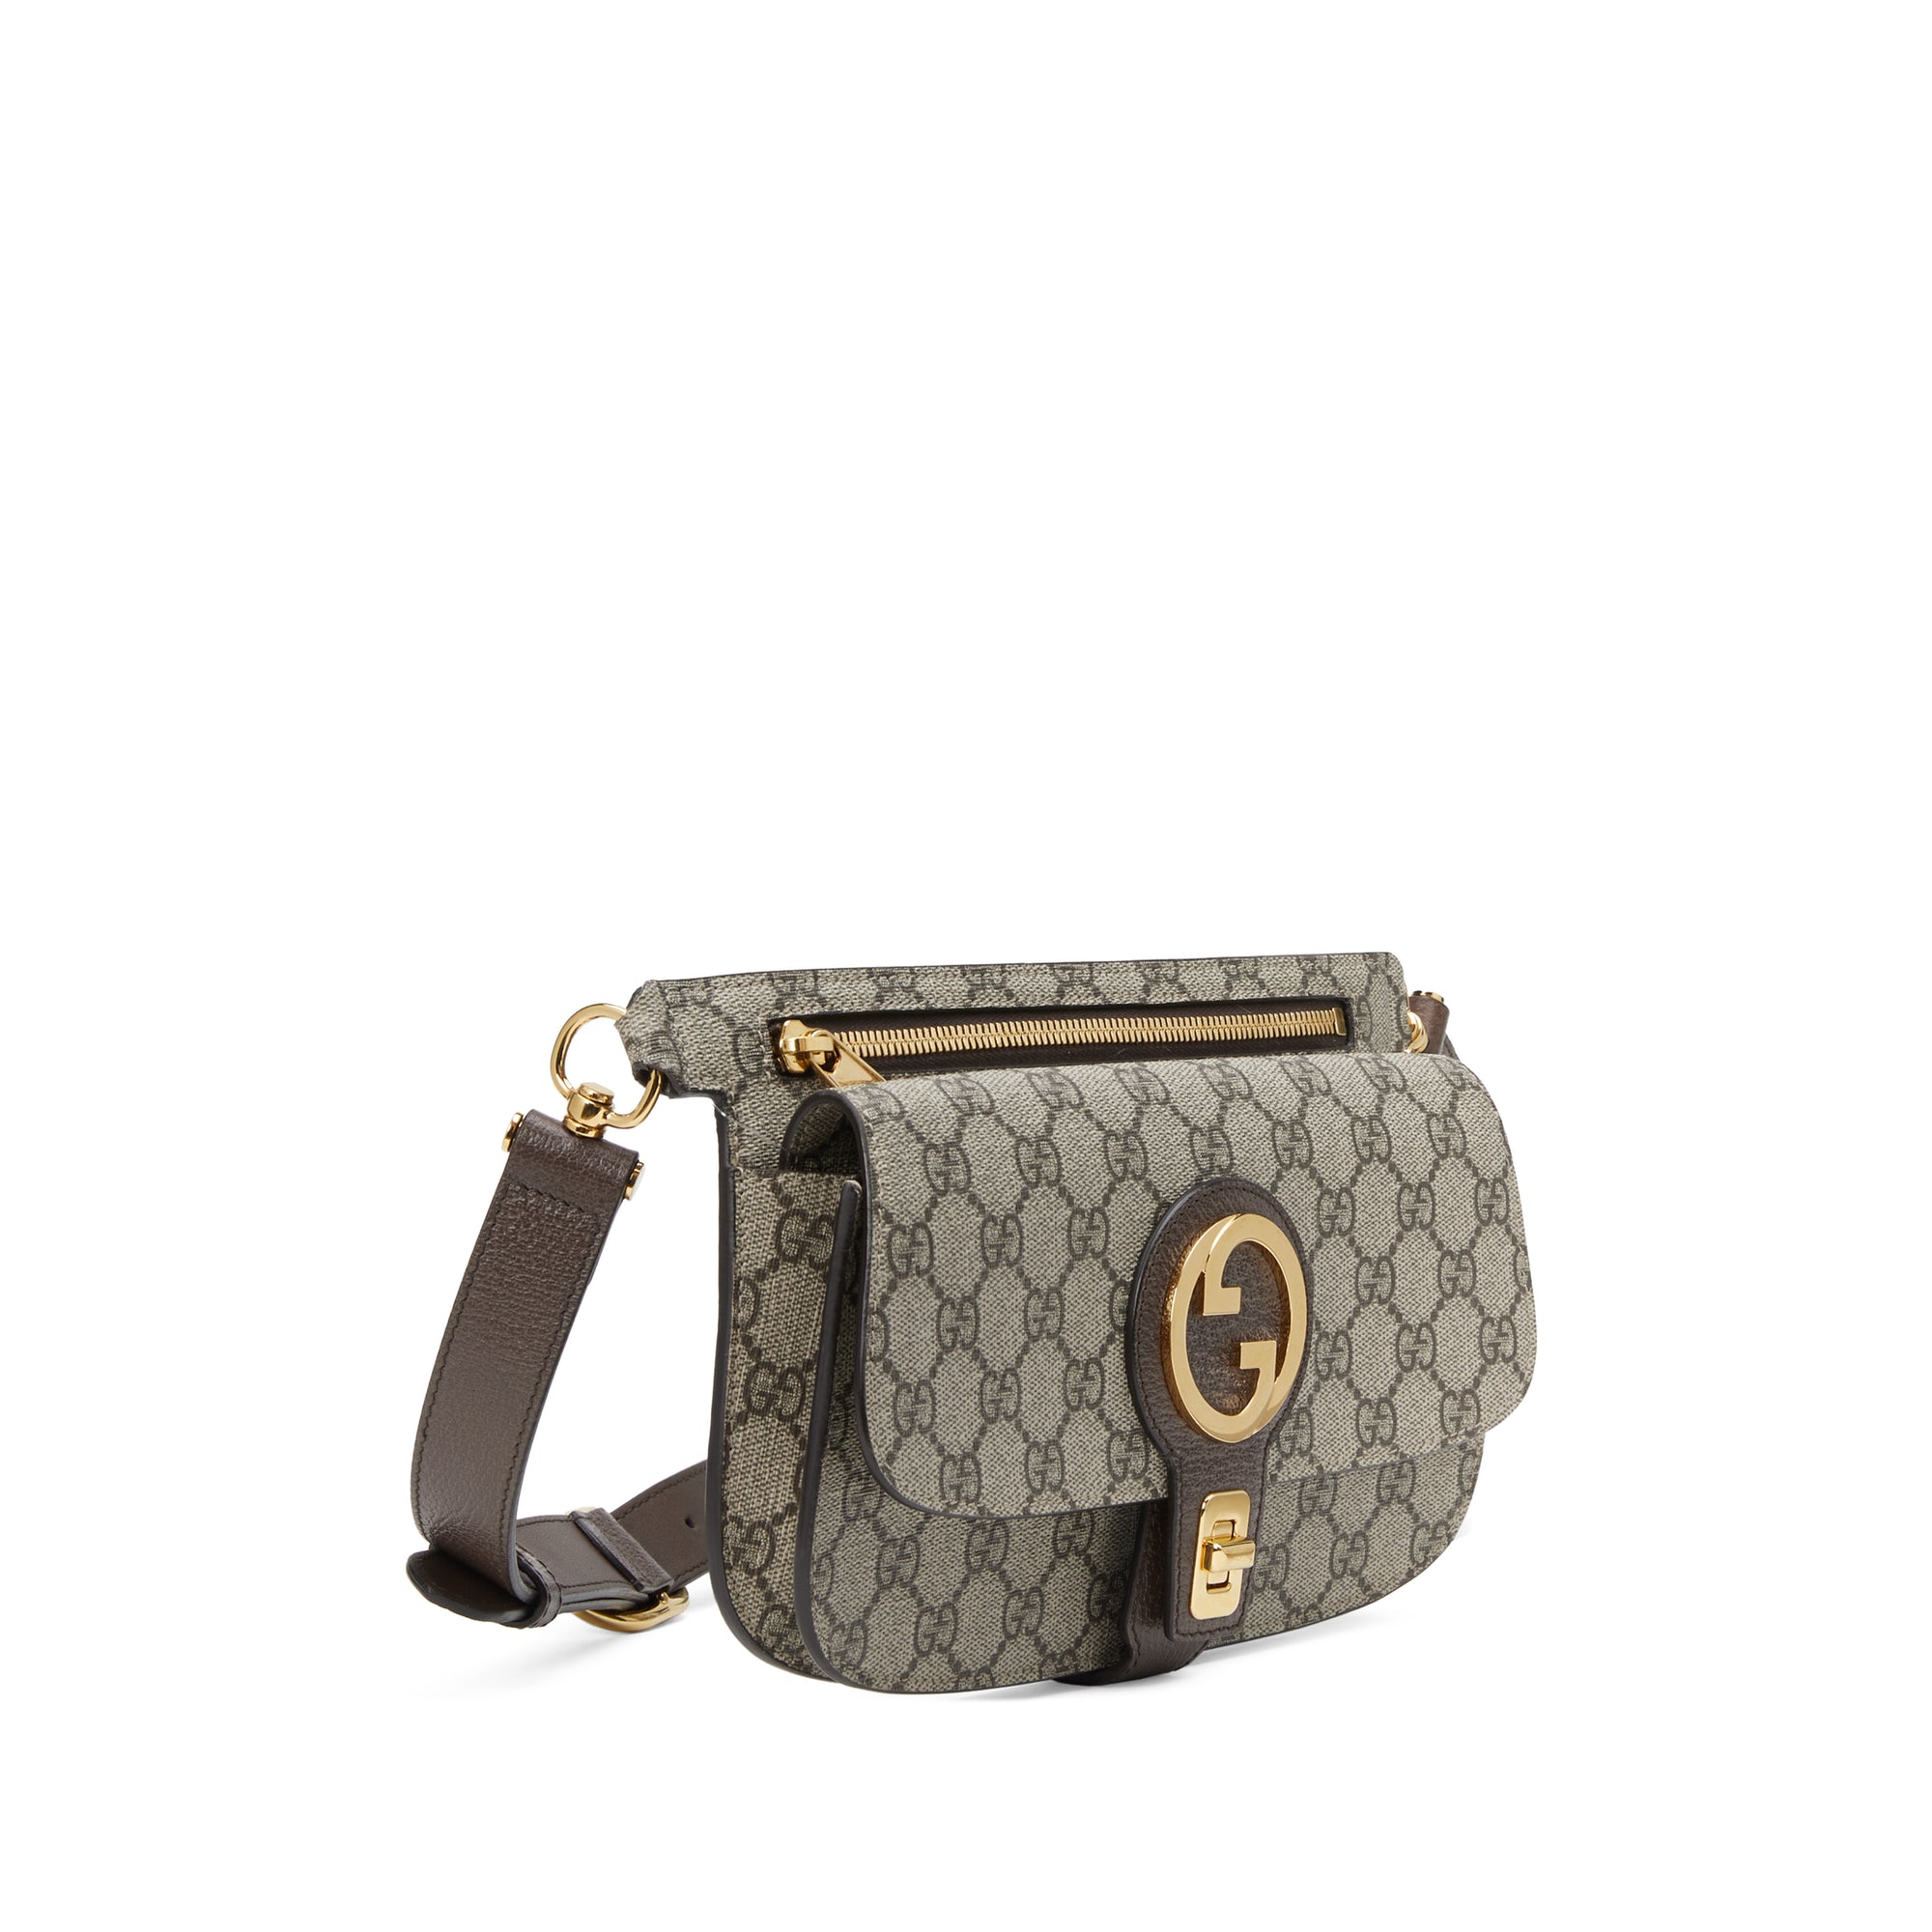 Gucci - Women’s Blondie Belt Bag - (Beige/Ebony) view 2